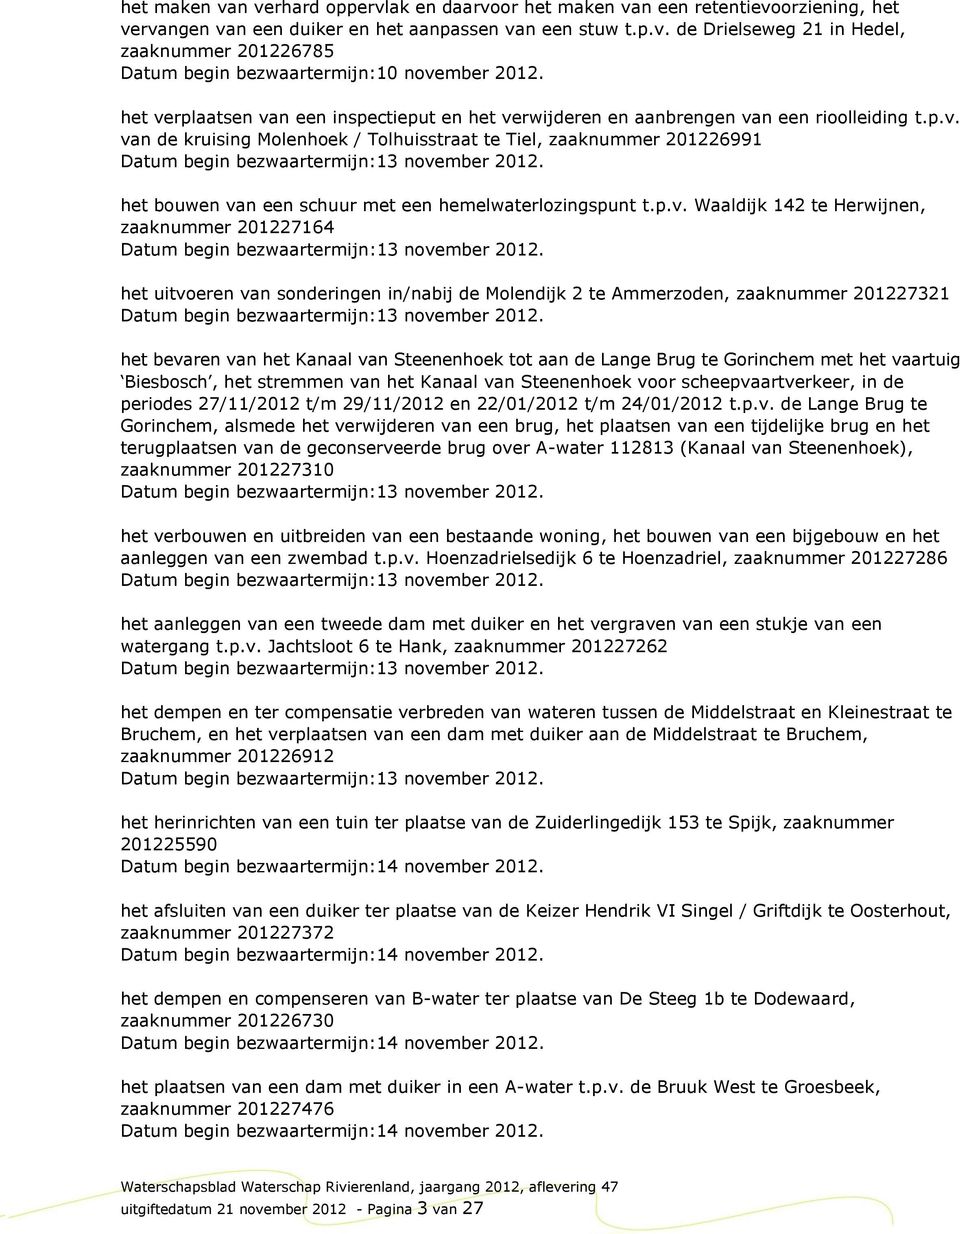 het bouwen van een schuur met een hemelwaterlozingspunt t.p.v. Waaldijk 142 te Herwijnen, zaaknummer 201227164 Datum begin bezwaartermijn:13 november 2012.